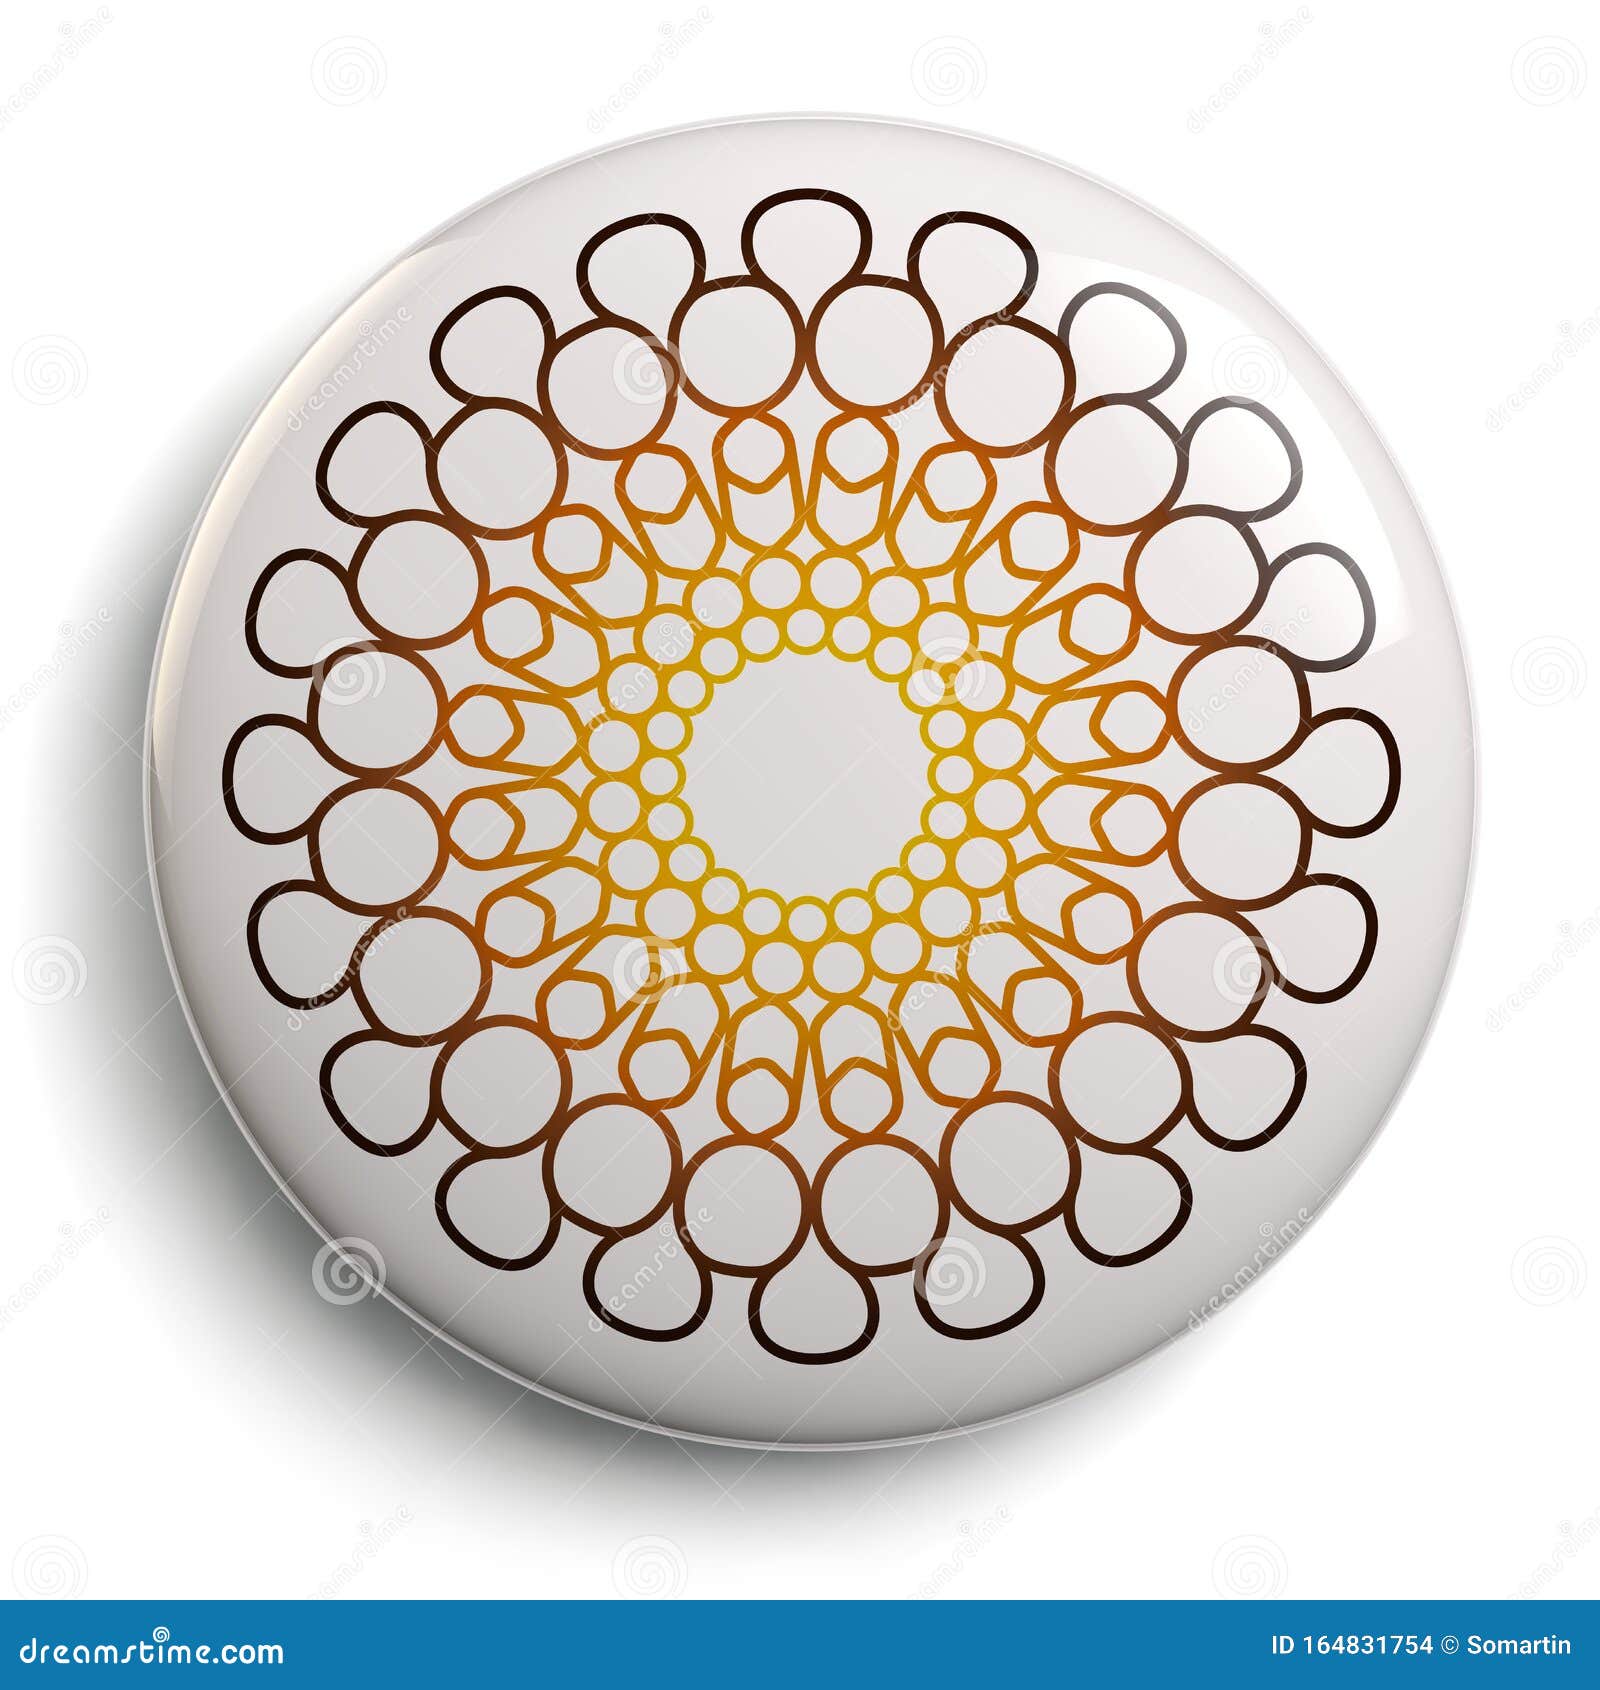 expo 2020 dubai logo button - 3d 